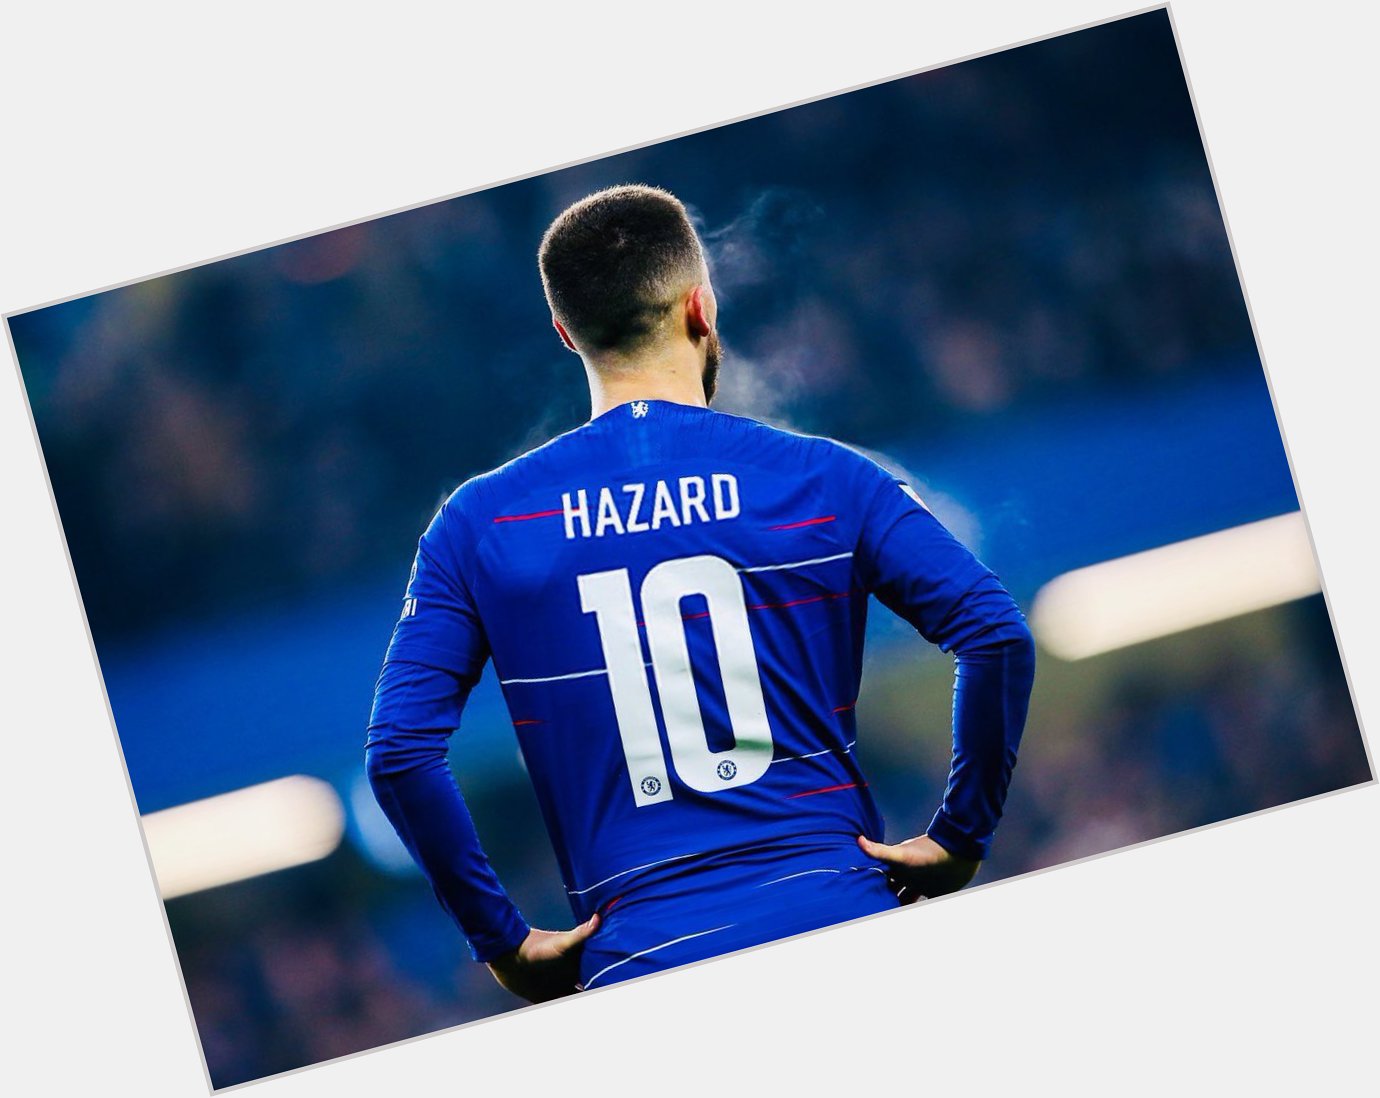 Happy birthday to this Chelsea legend

Eden Hazard 